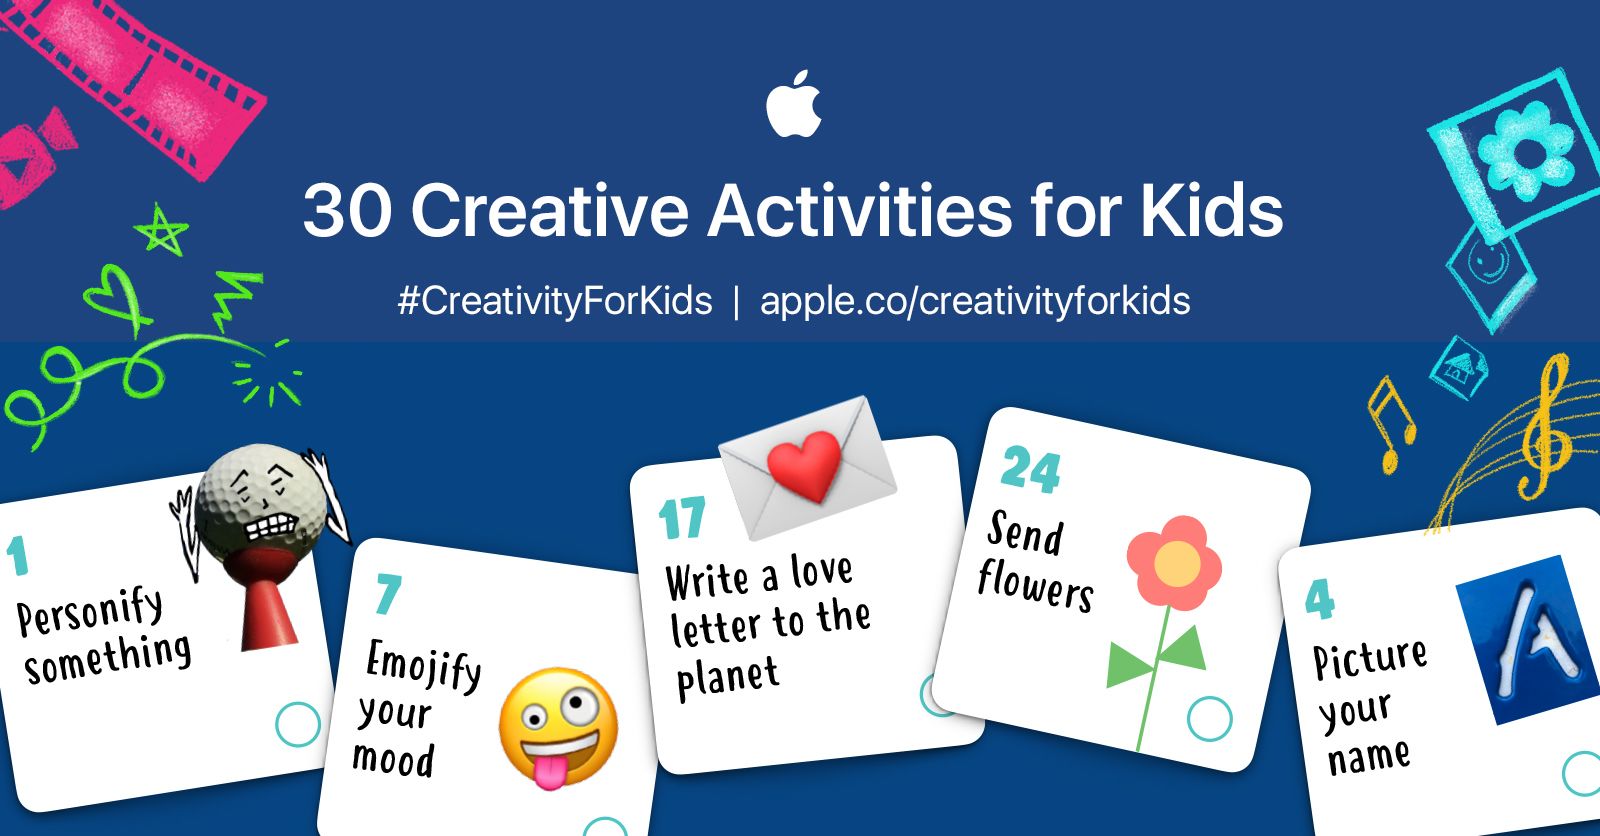 アップル教育チーム、子供がiPhoneやiPadで楽しめる30のアクティビティを提案